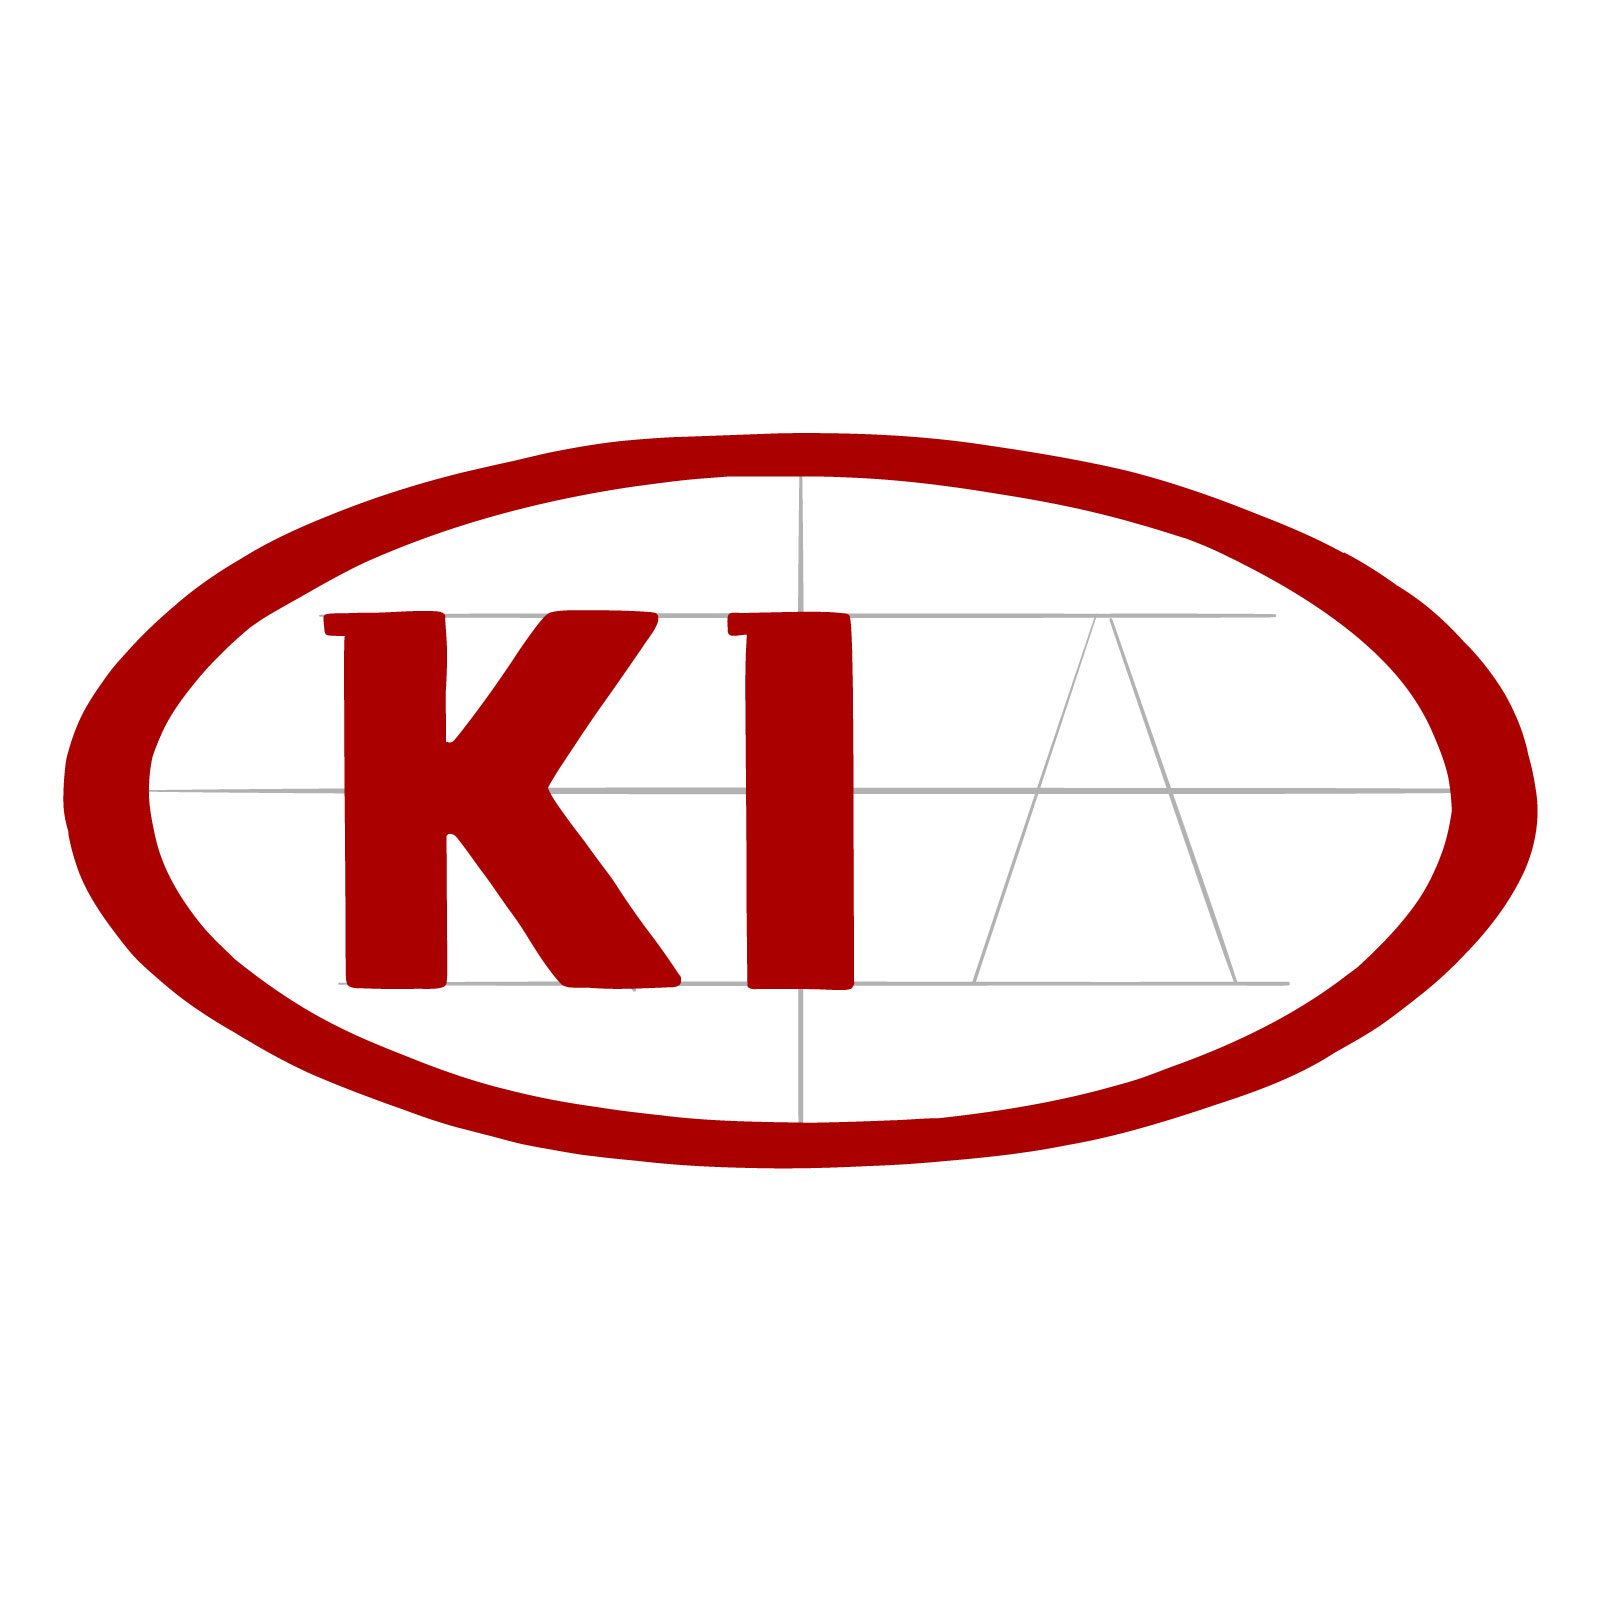 How to draw the KIA logo - step 07